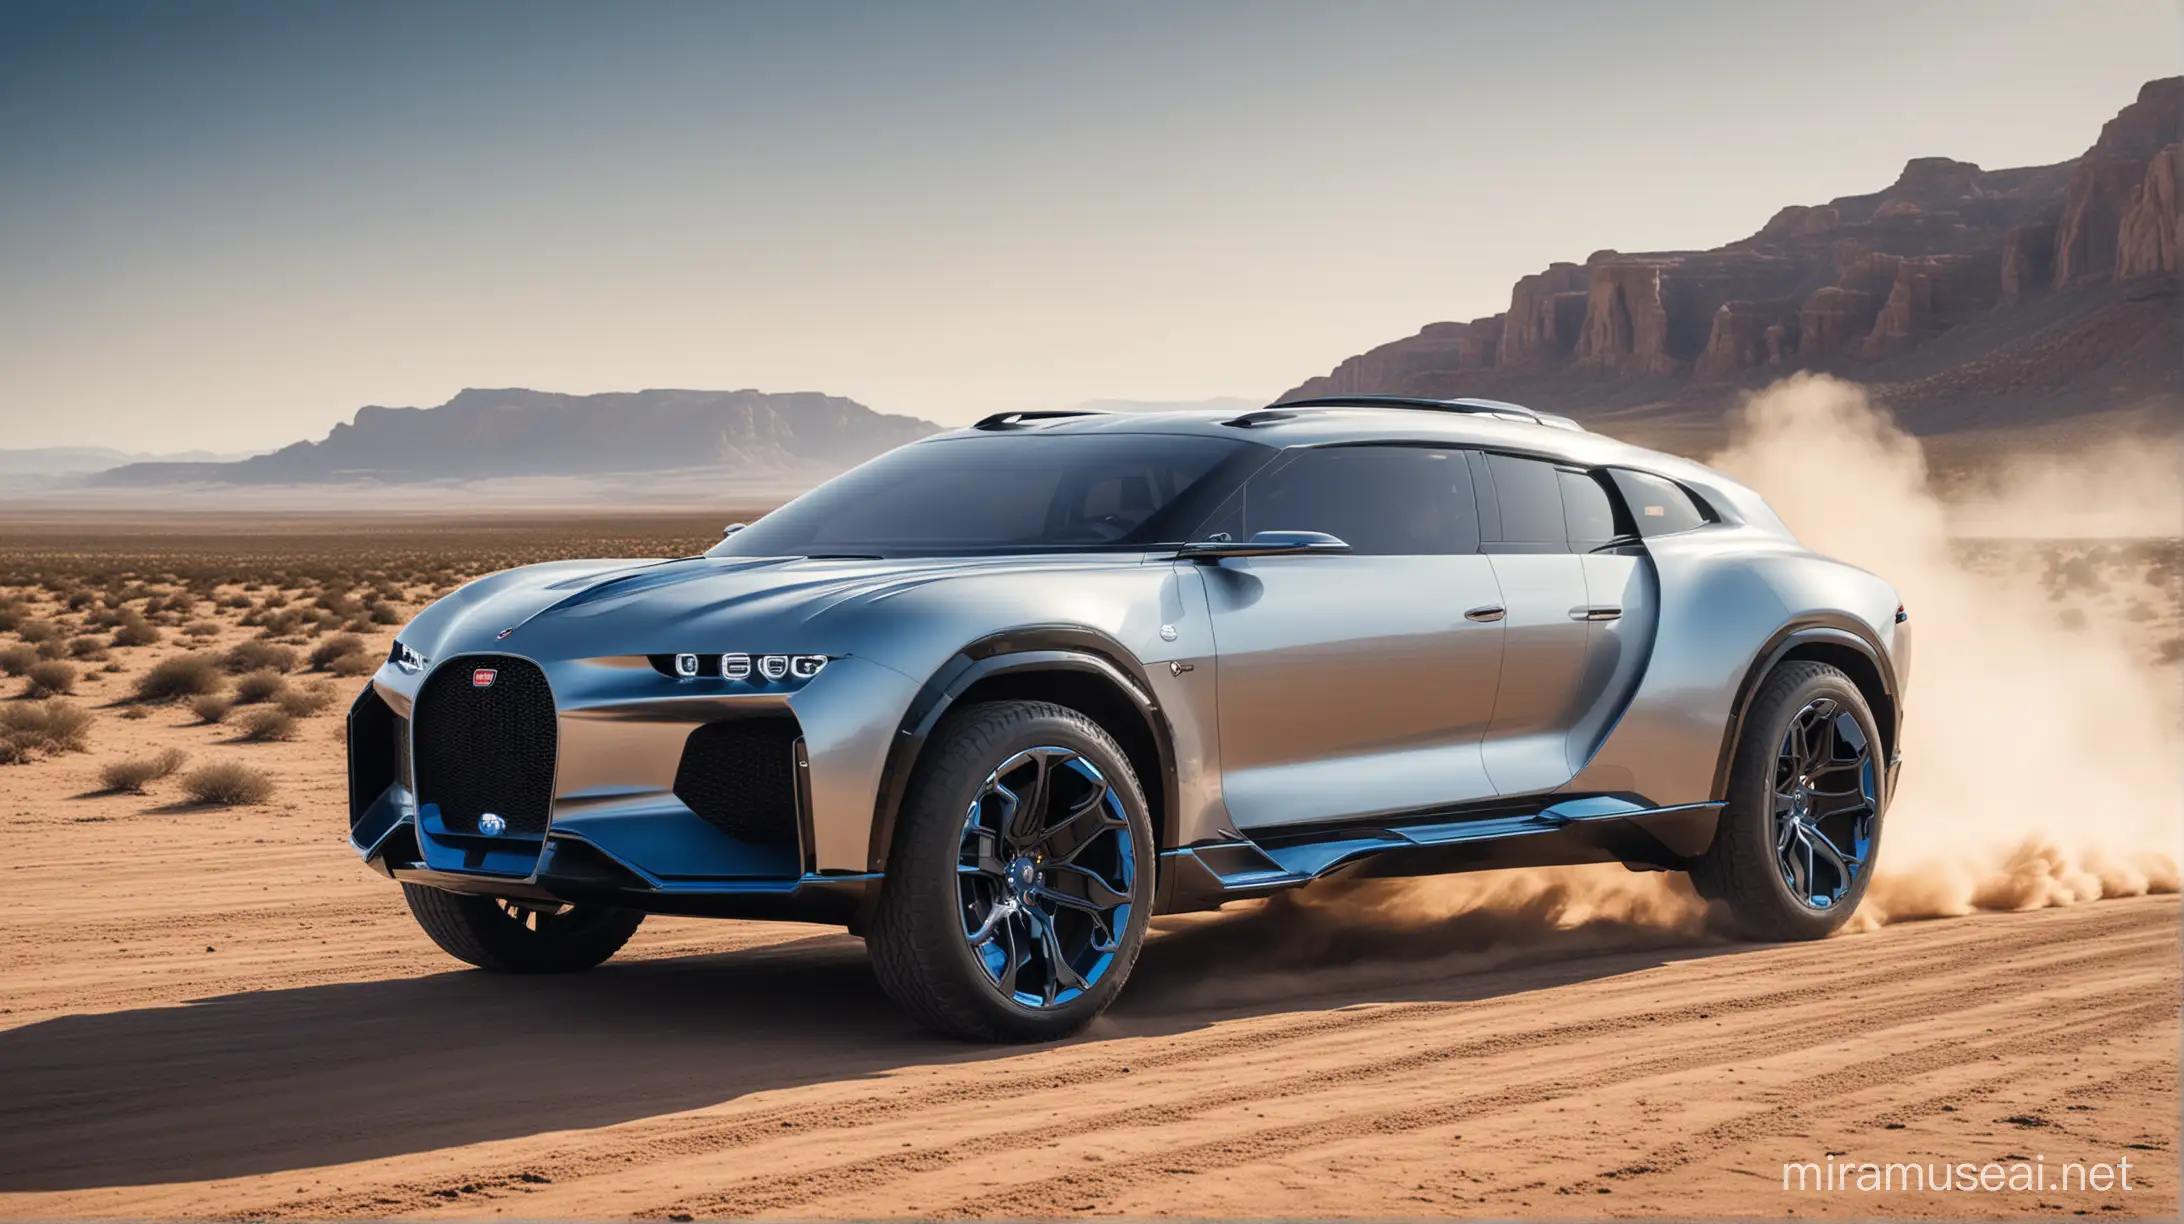 Bugatti La Voiture Noire Inspired Silver and Blue Concept SUV Driving in Desert